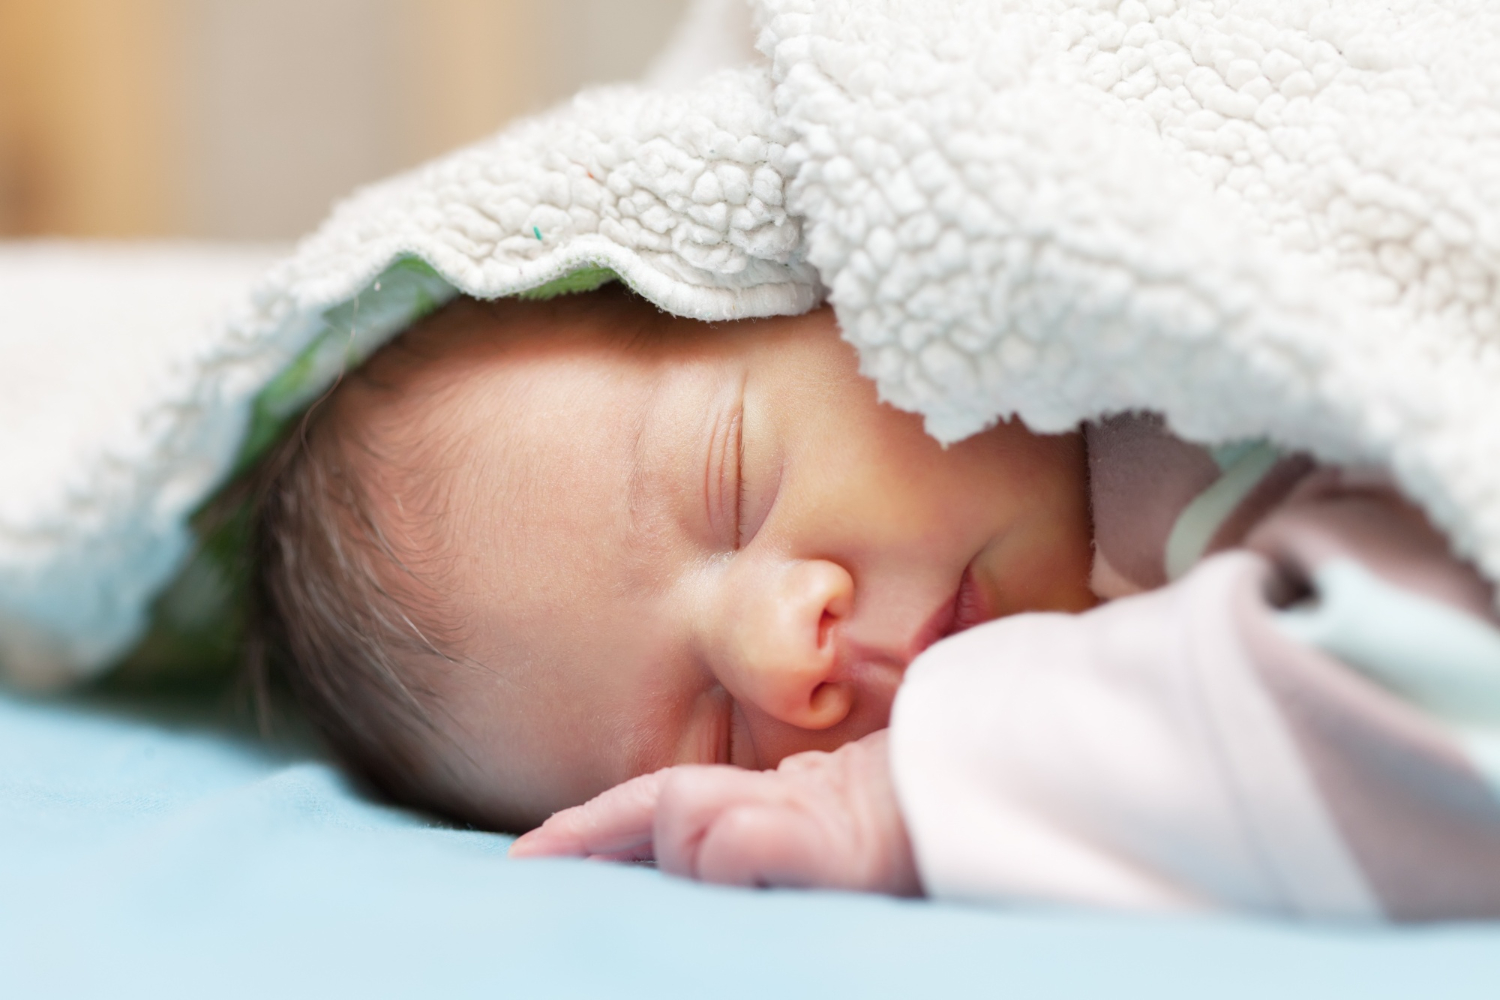  Nằm mơ thấy trẻ sơ sinh là một trong những giấc mơ ĐẸP HIỂU ý nghĩa